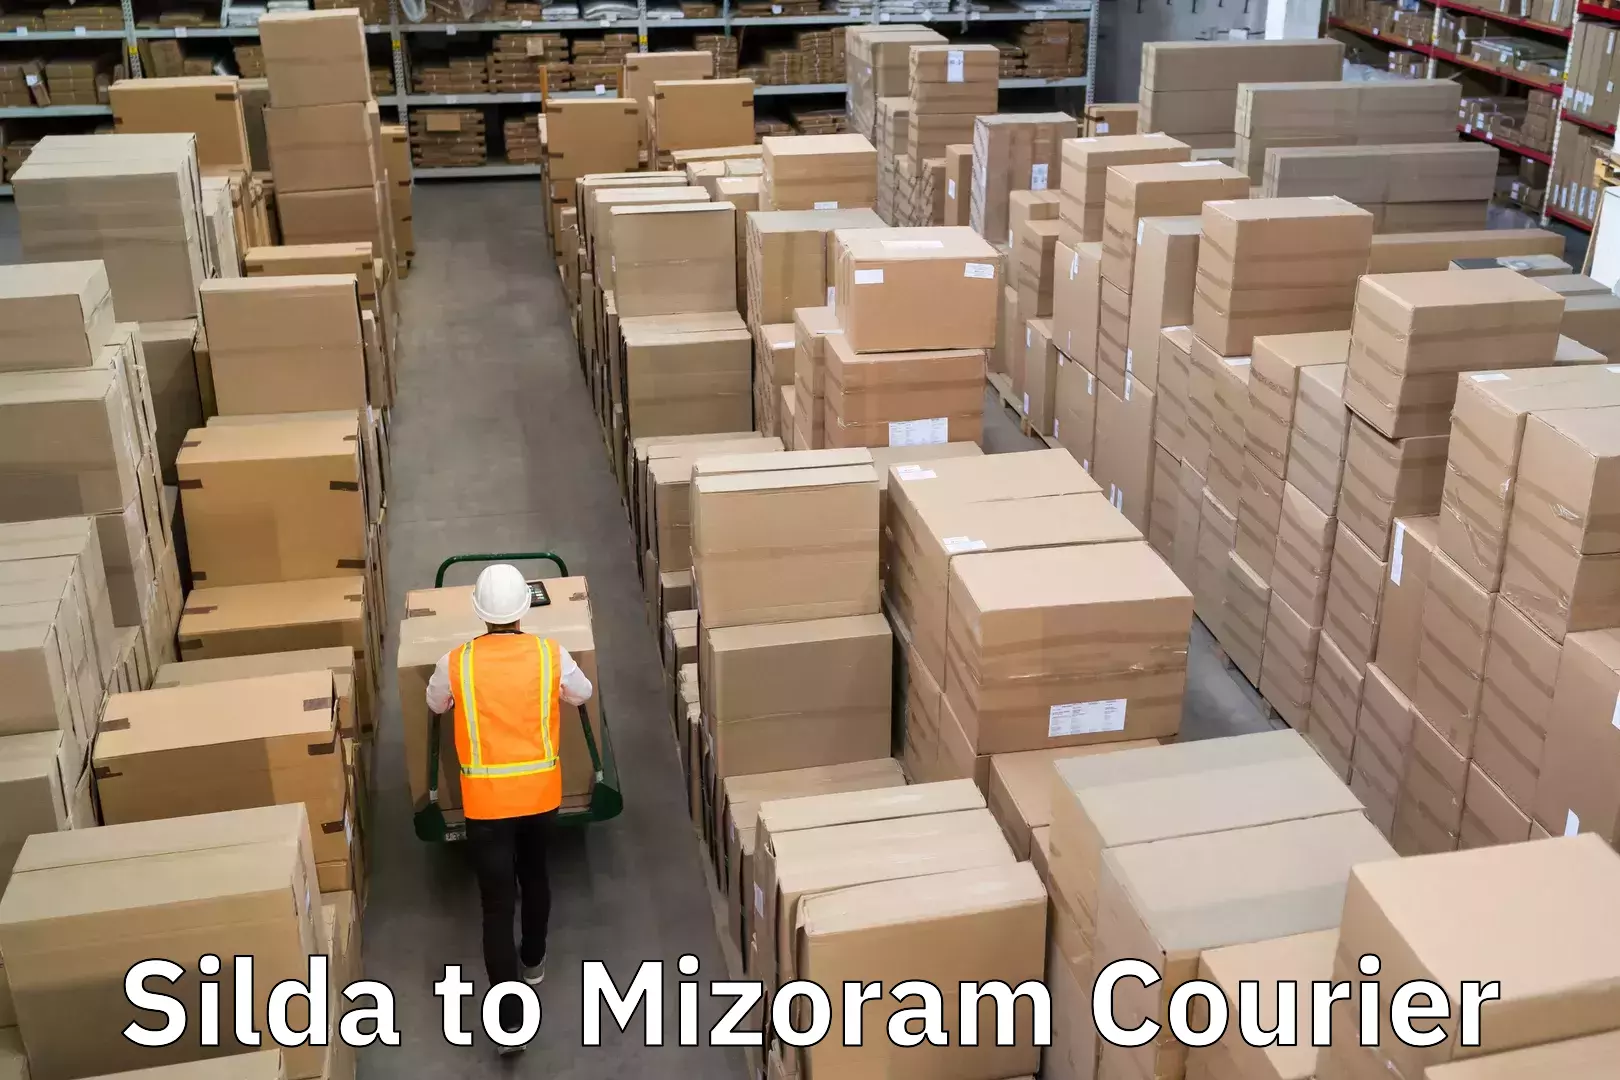 Speedy delivery service Silda to Mizoram